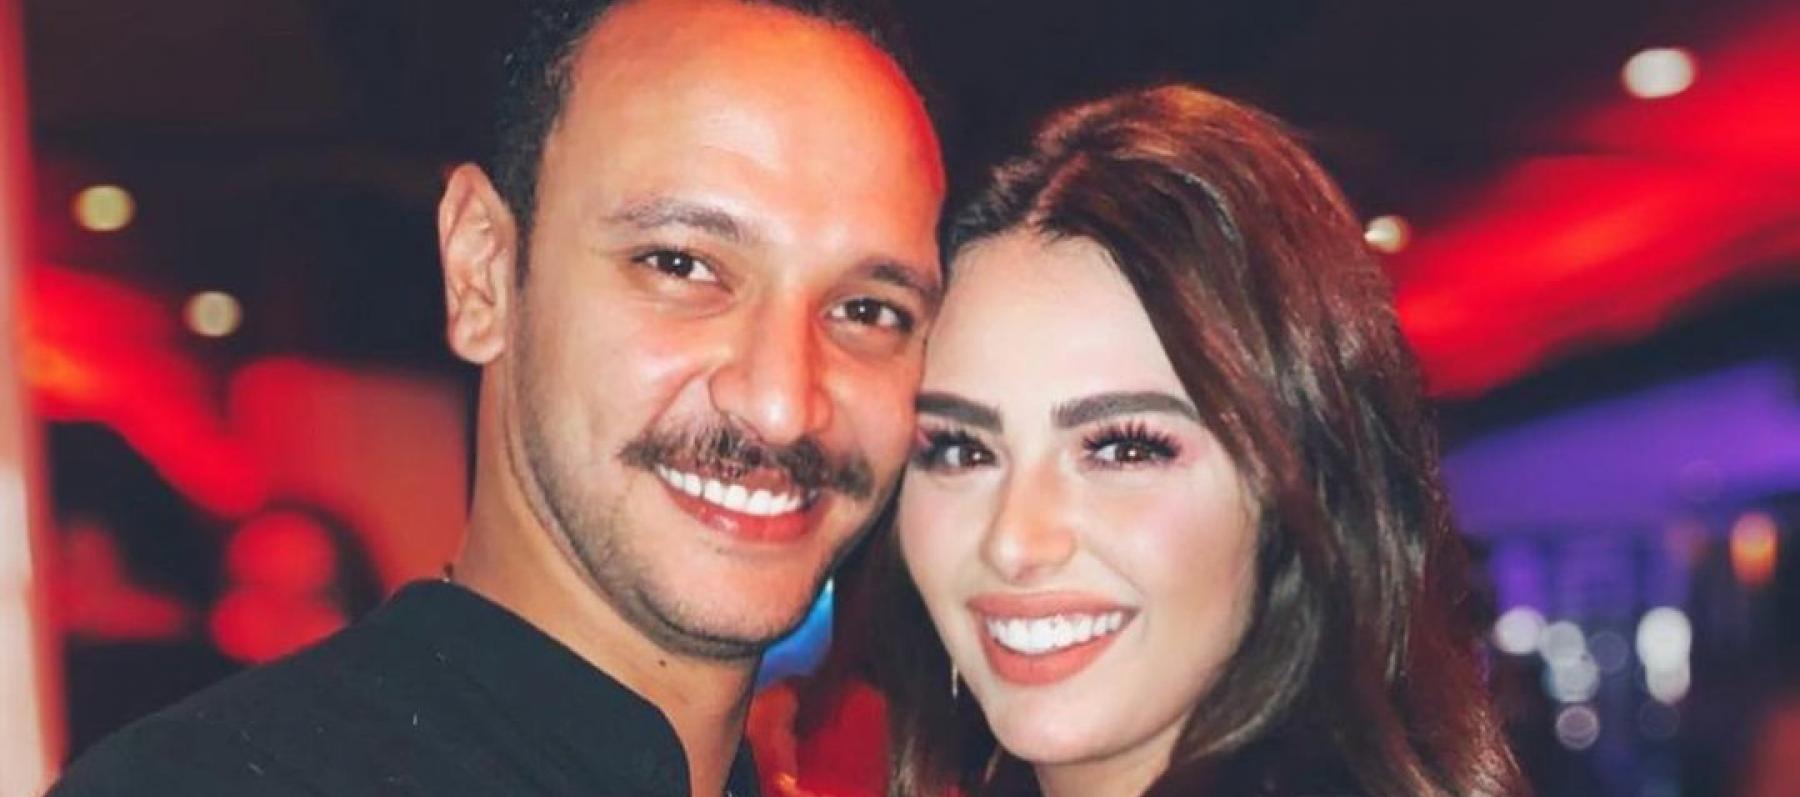 هنادي مهنا وزوجها أحمد صالح - صورة من انستغرام